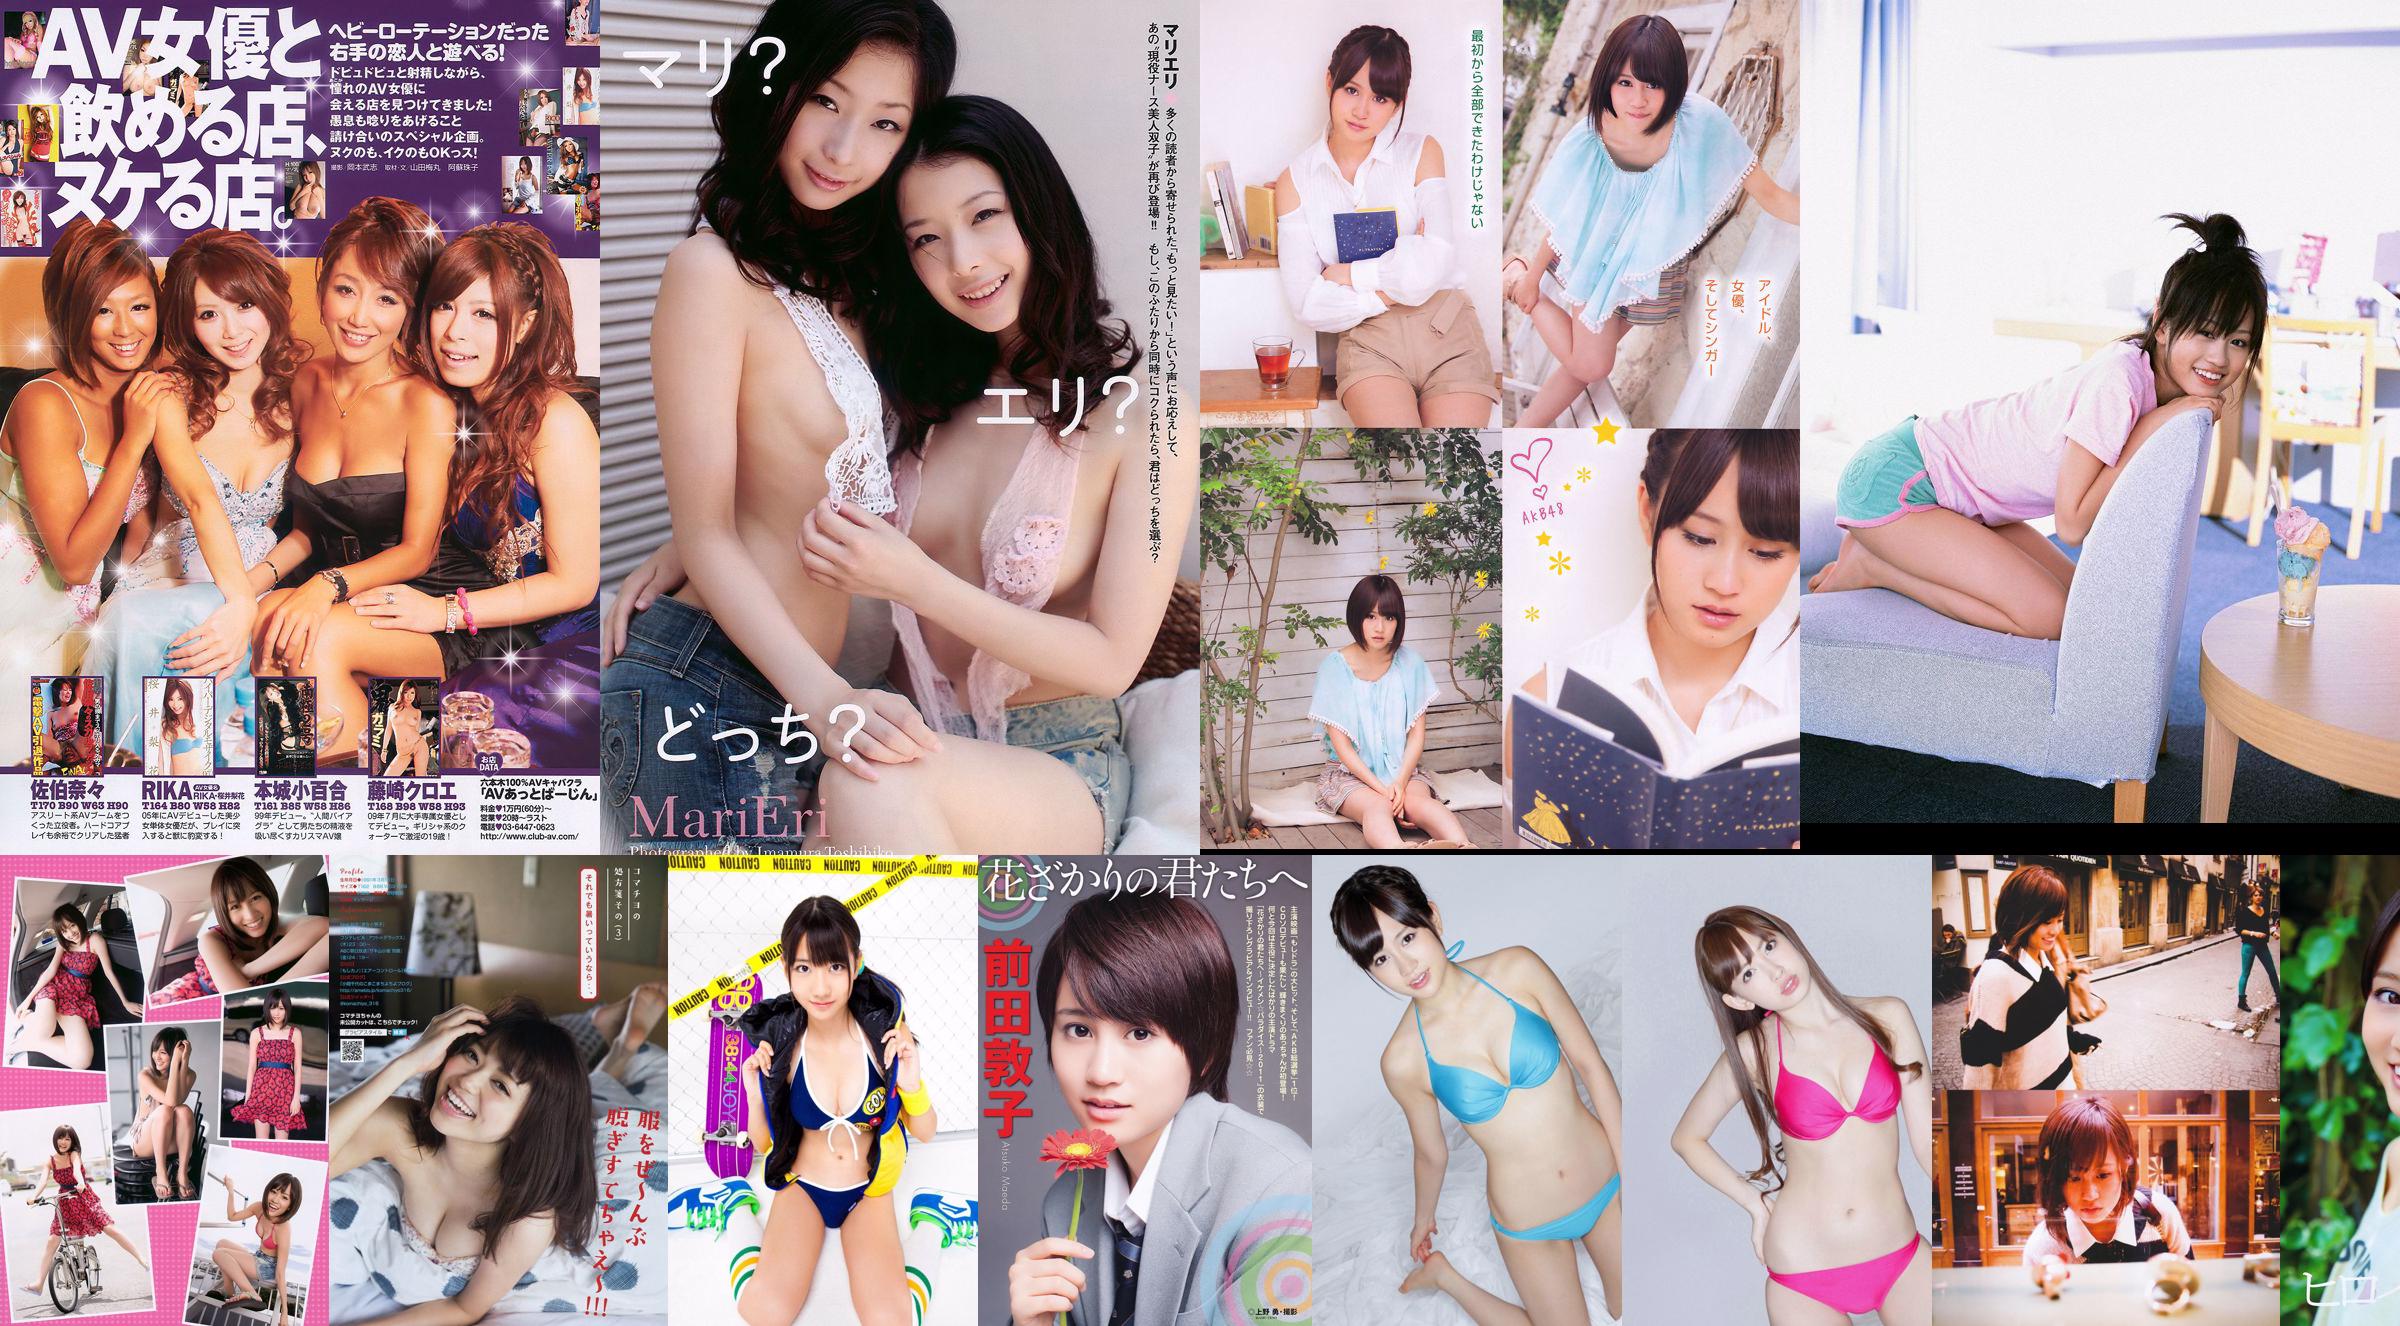 [Young Magazine] Maeda Atsuko Koma Chiyo 2015 No.34 Photo Magazine No.c998c6 Pagina 3